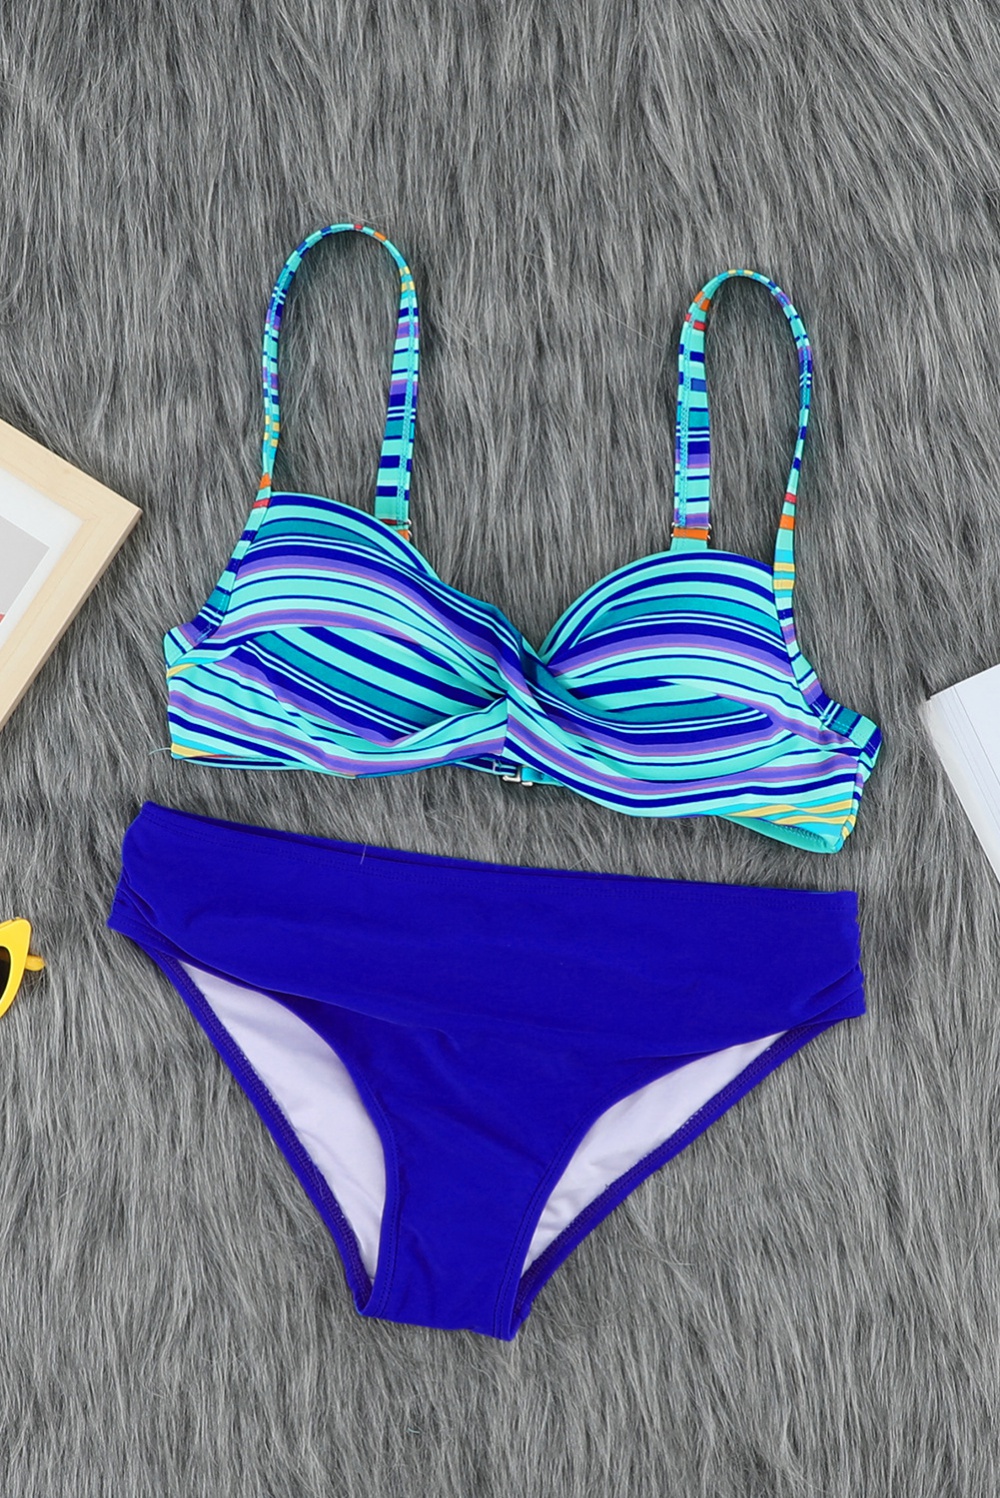 Stripe bikini leopard swimwear 2pcs set for women